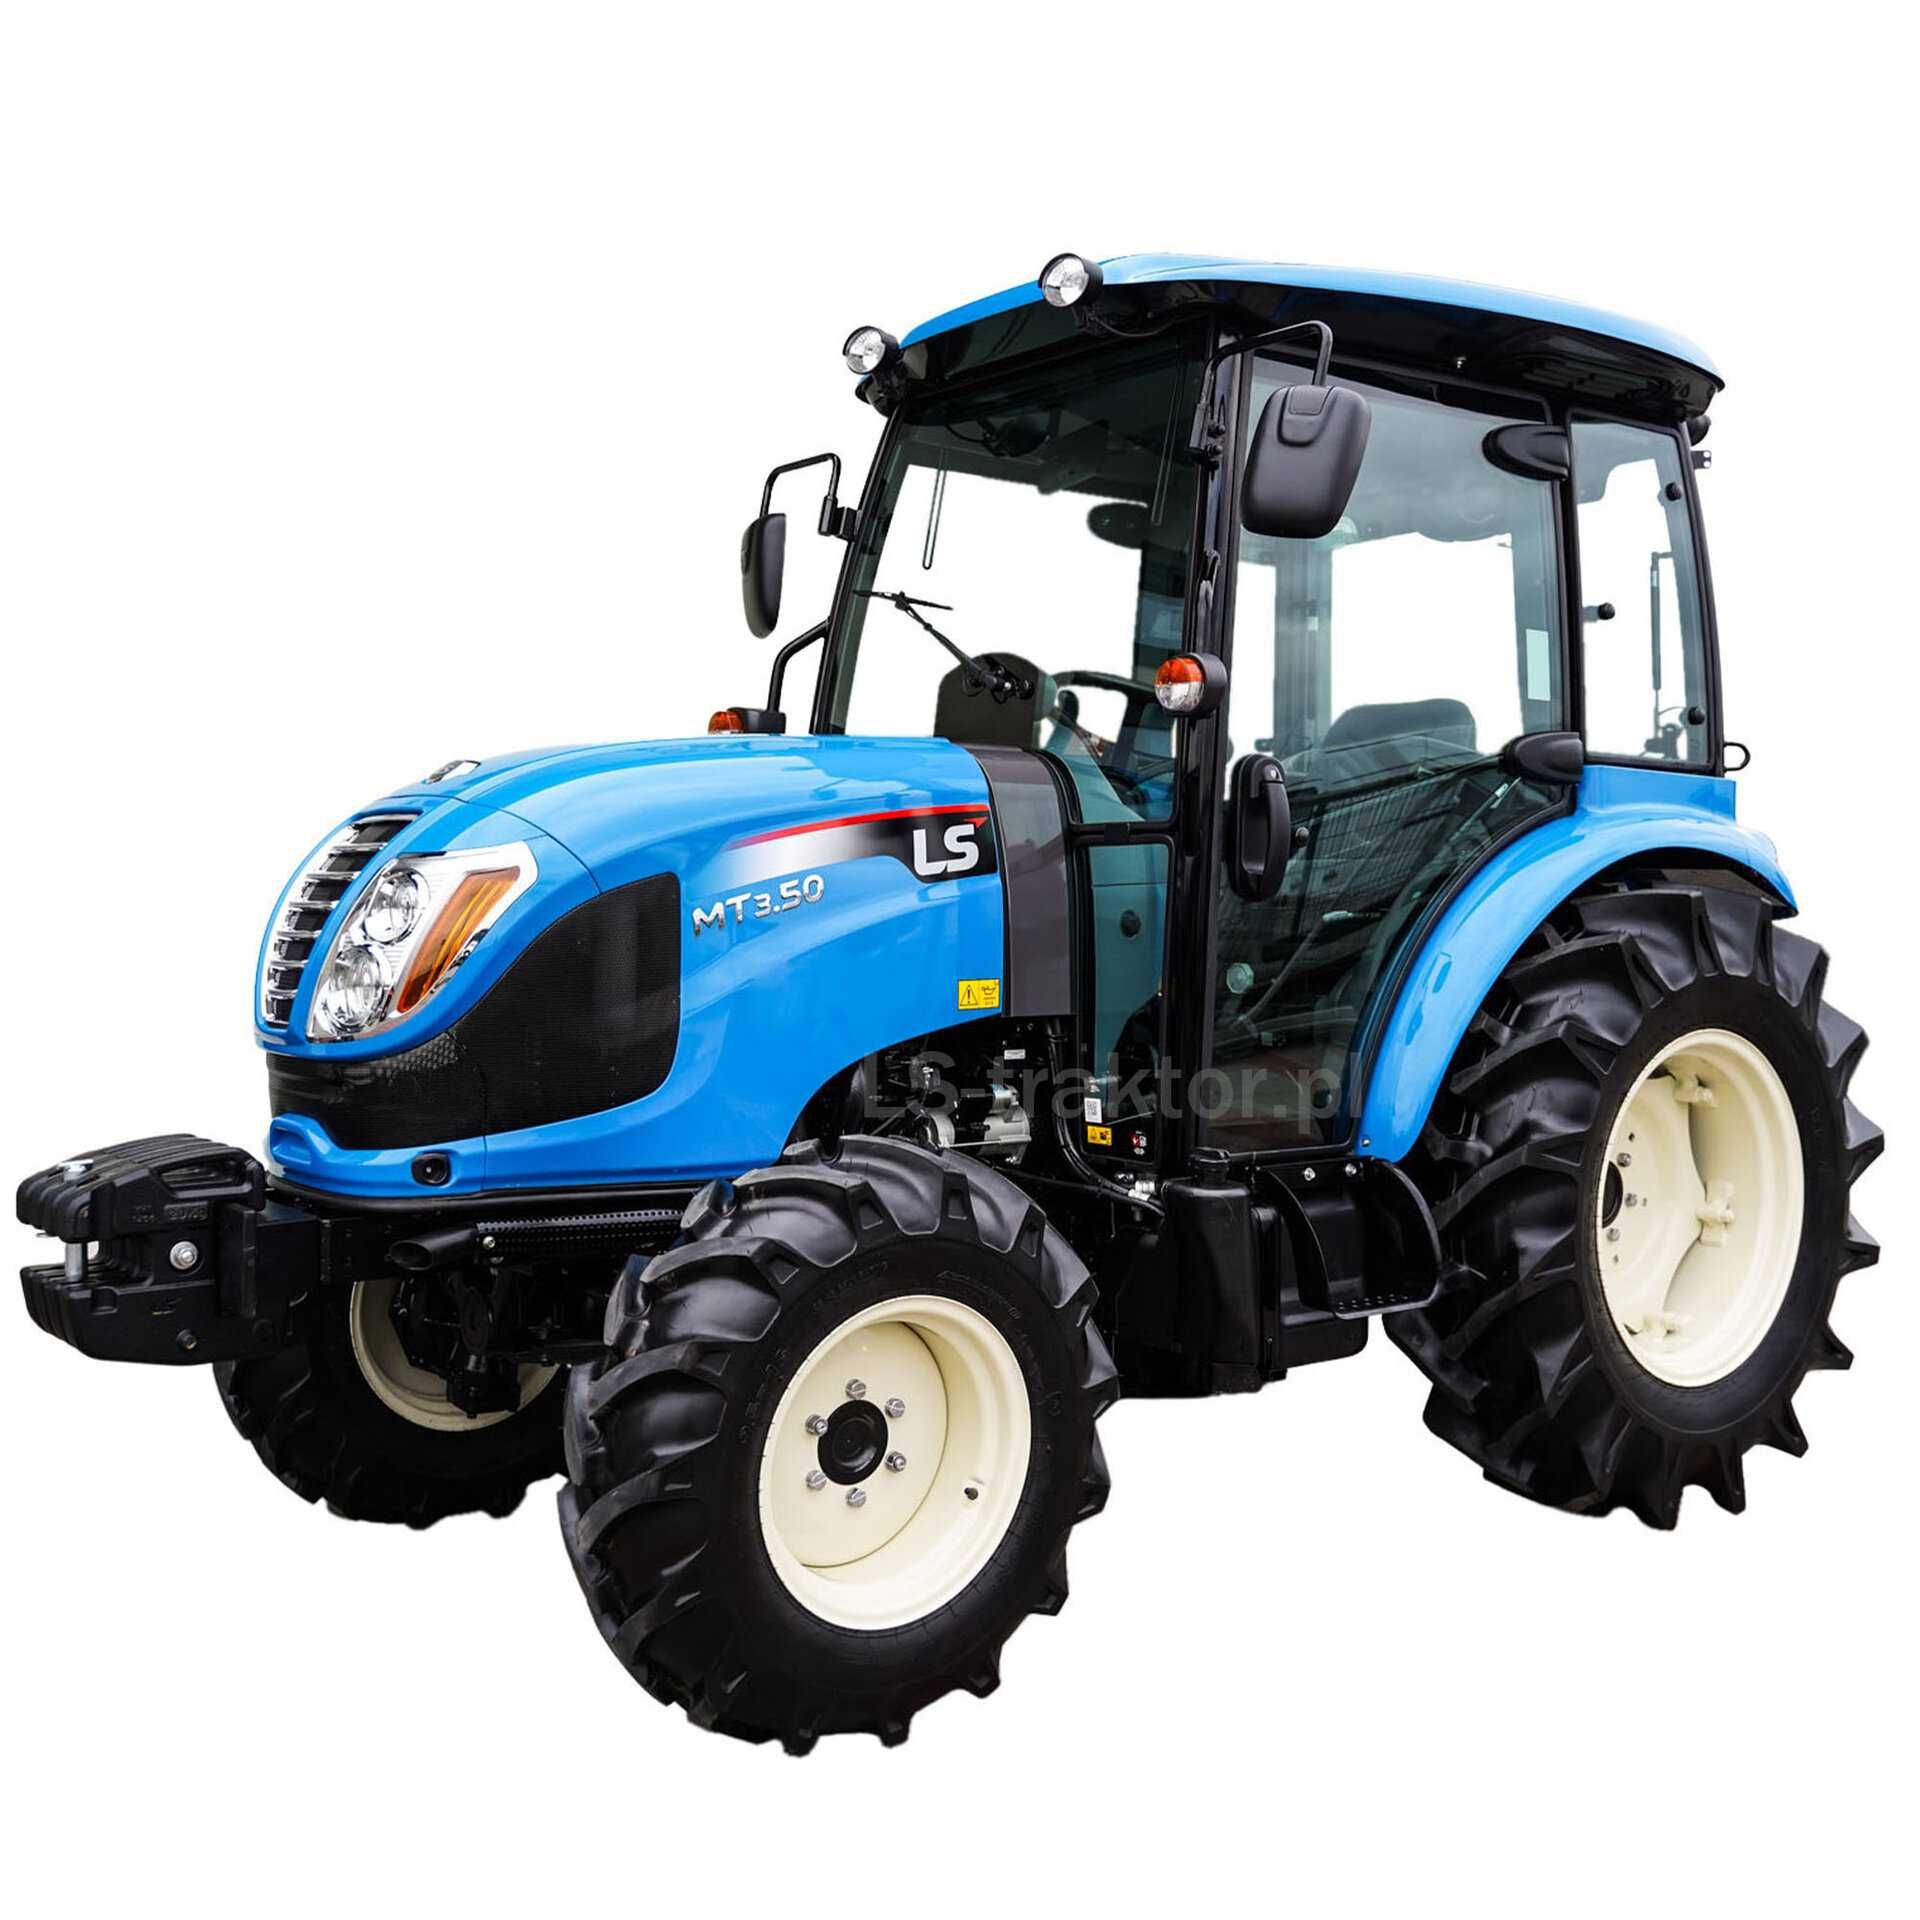 Nowy traktor LS MT3.50 HST 47KM z klimatyzowaną kabiną gw.5 lat